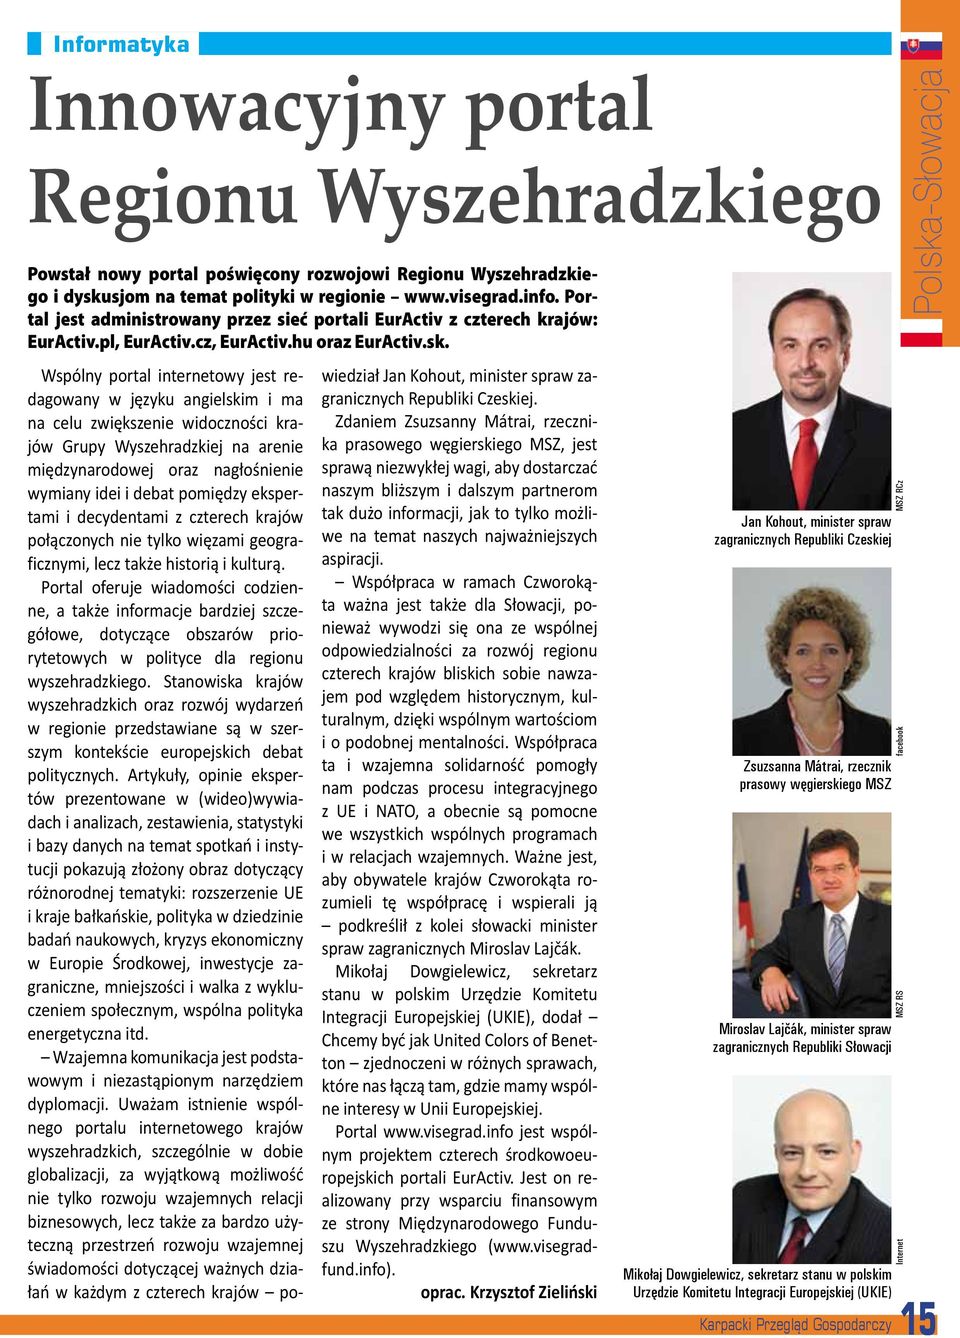 Polska-Słowacja Wspólny portal internetowy jest redagowany wiedział Jan Kohout, minister spraw za- w języku angielskim i ma granicznych Republiki Czeskiej.